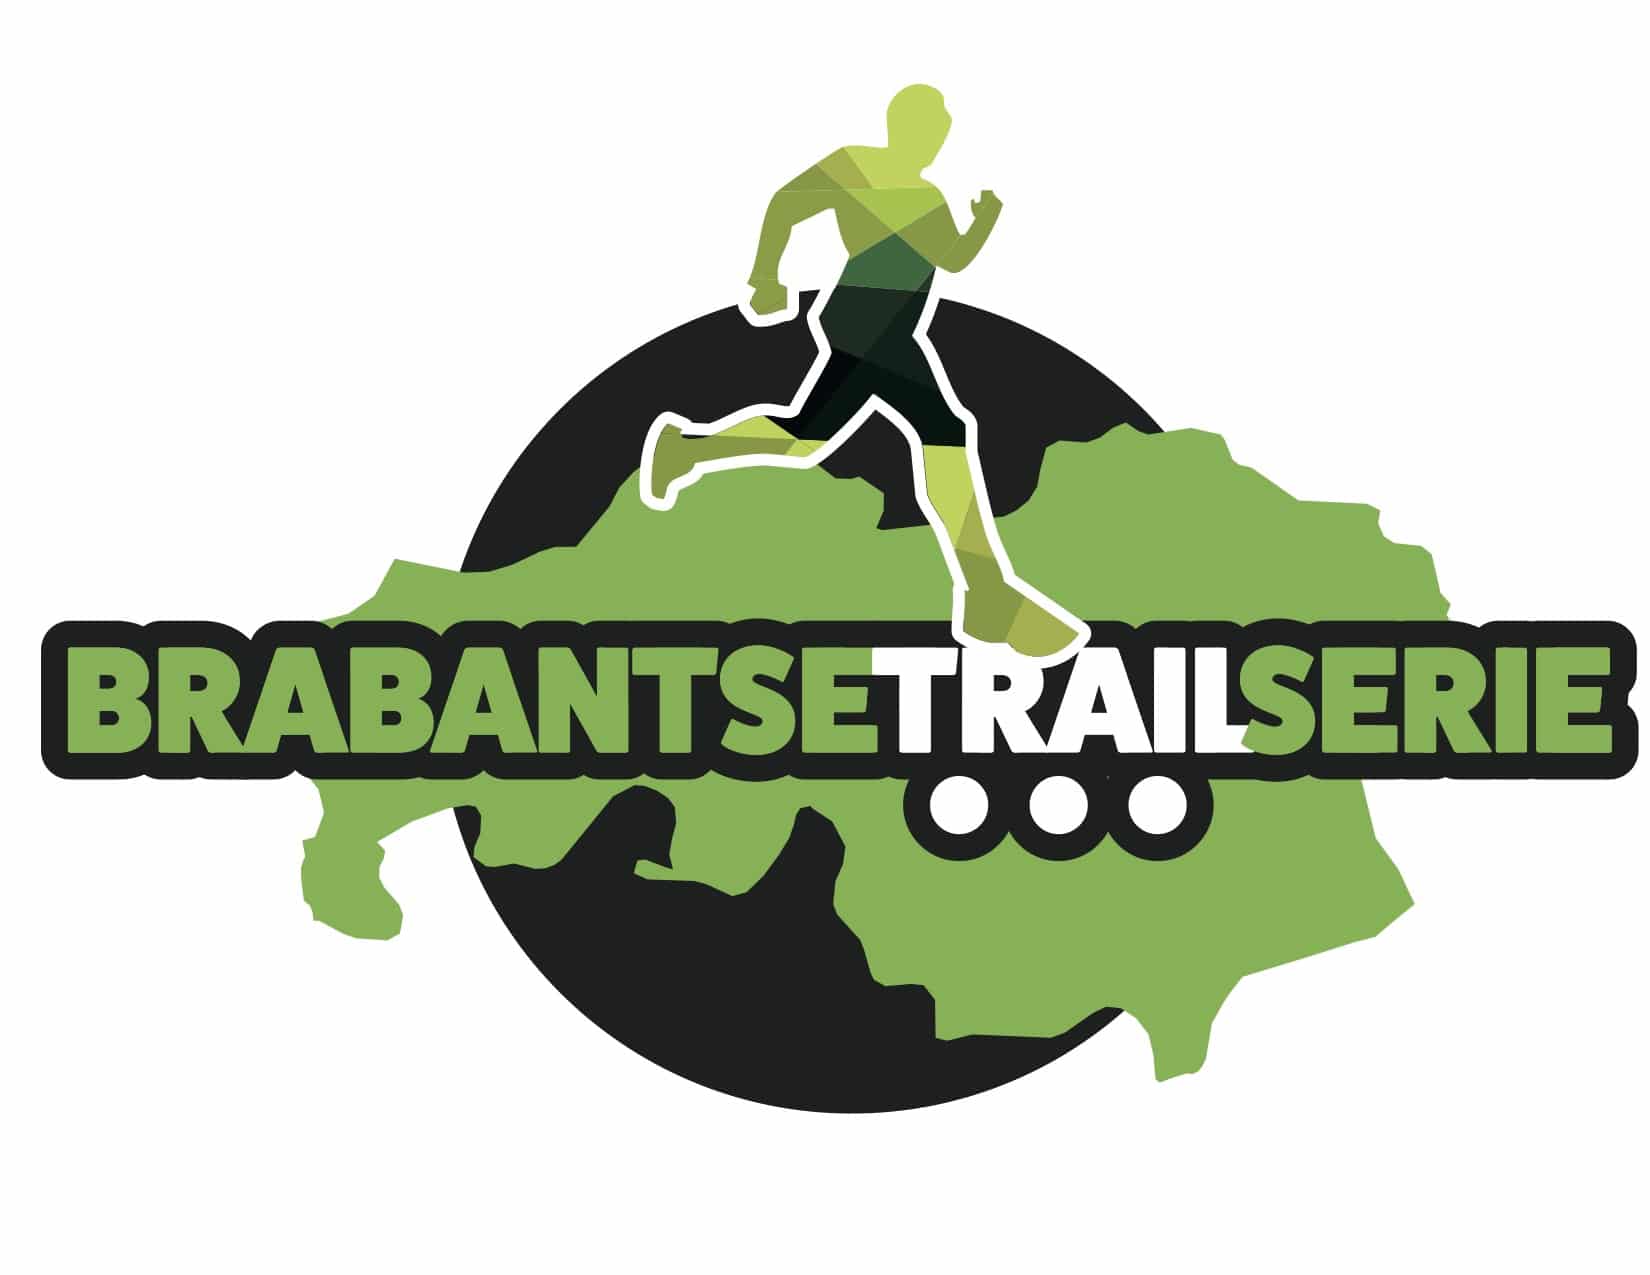 Brabantse Trail Serie